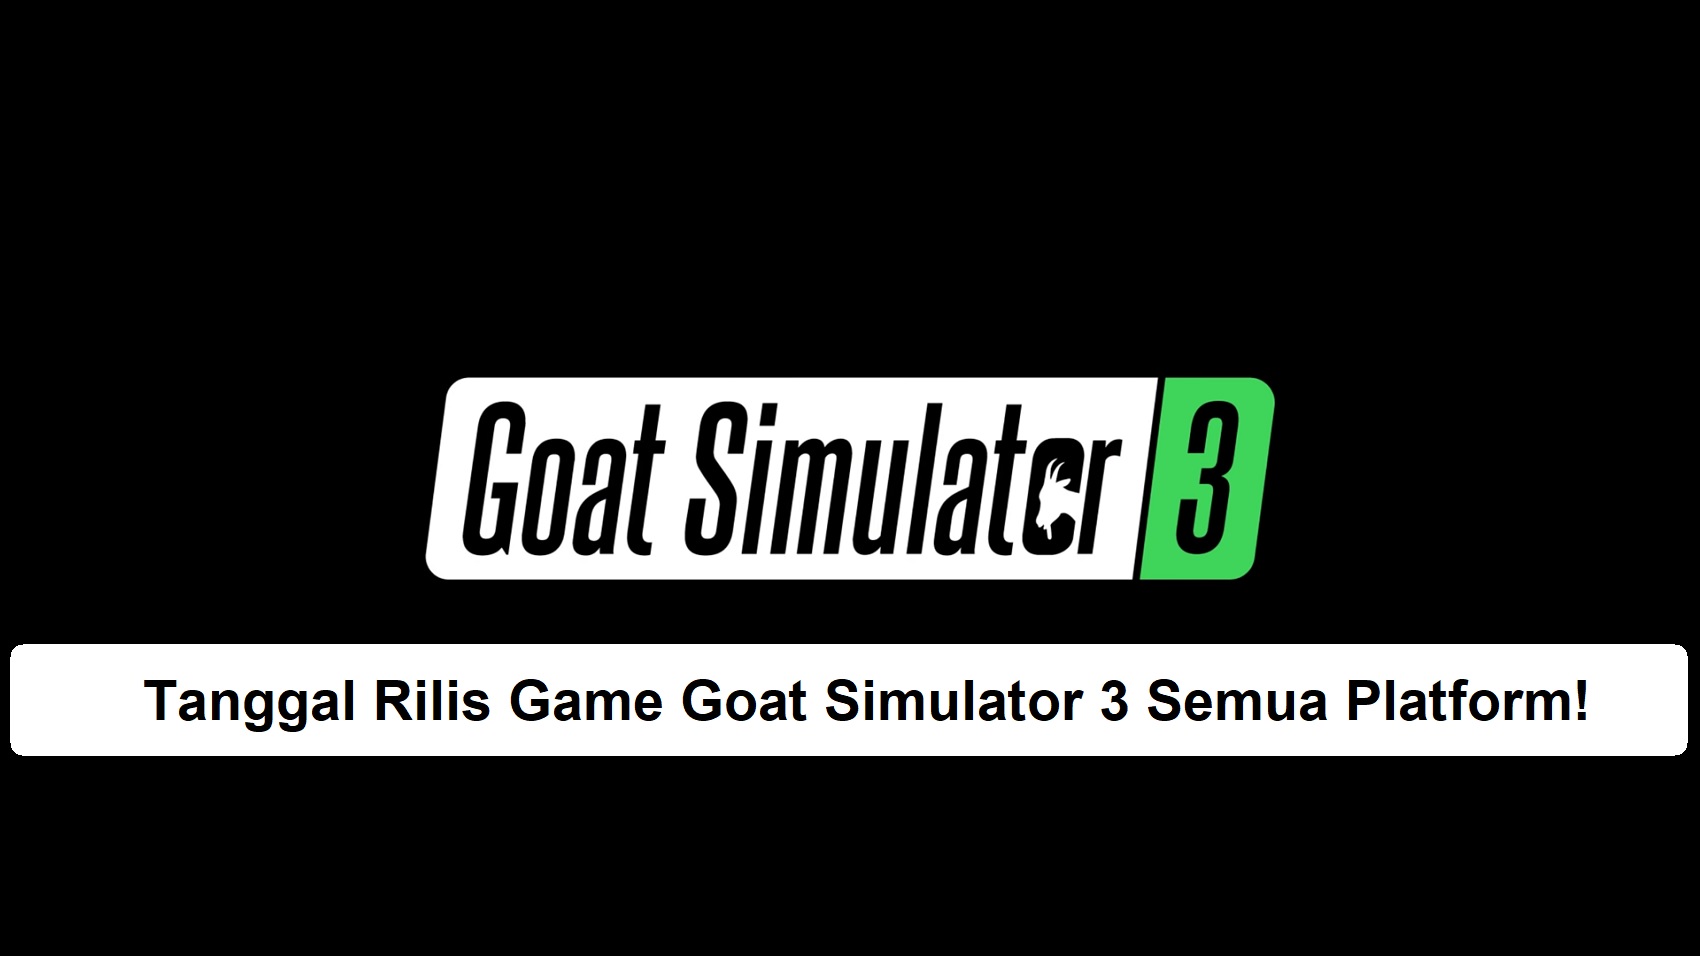 Tanggal Rilis Game Goat Simulator 3 Semua Platform!